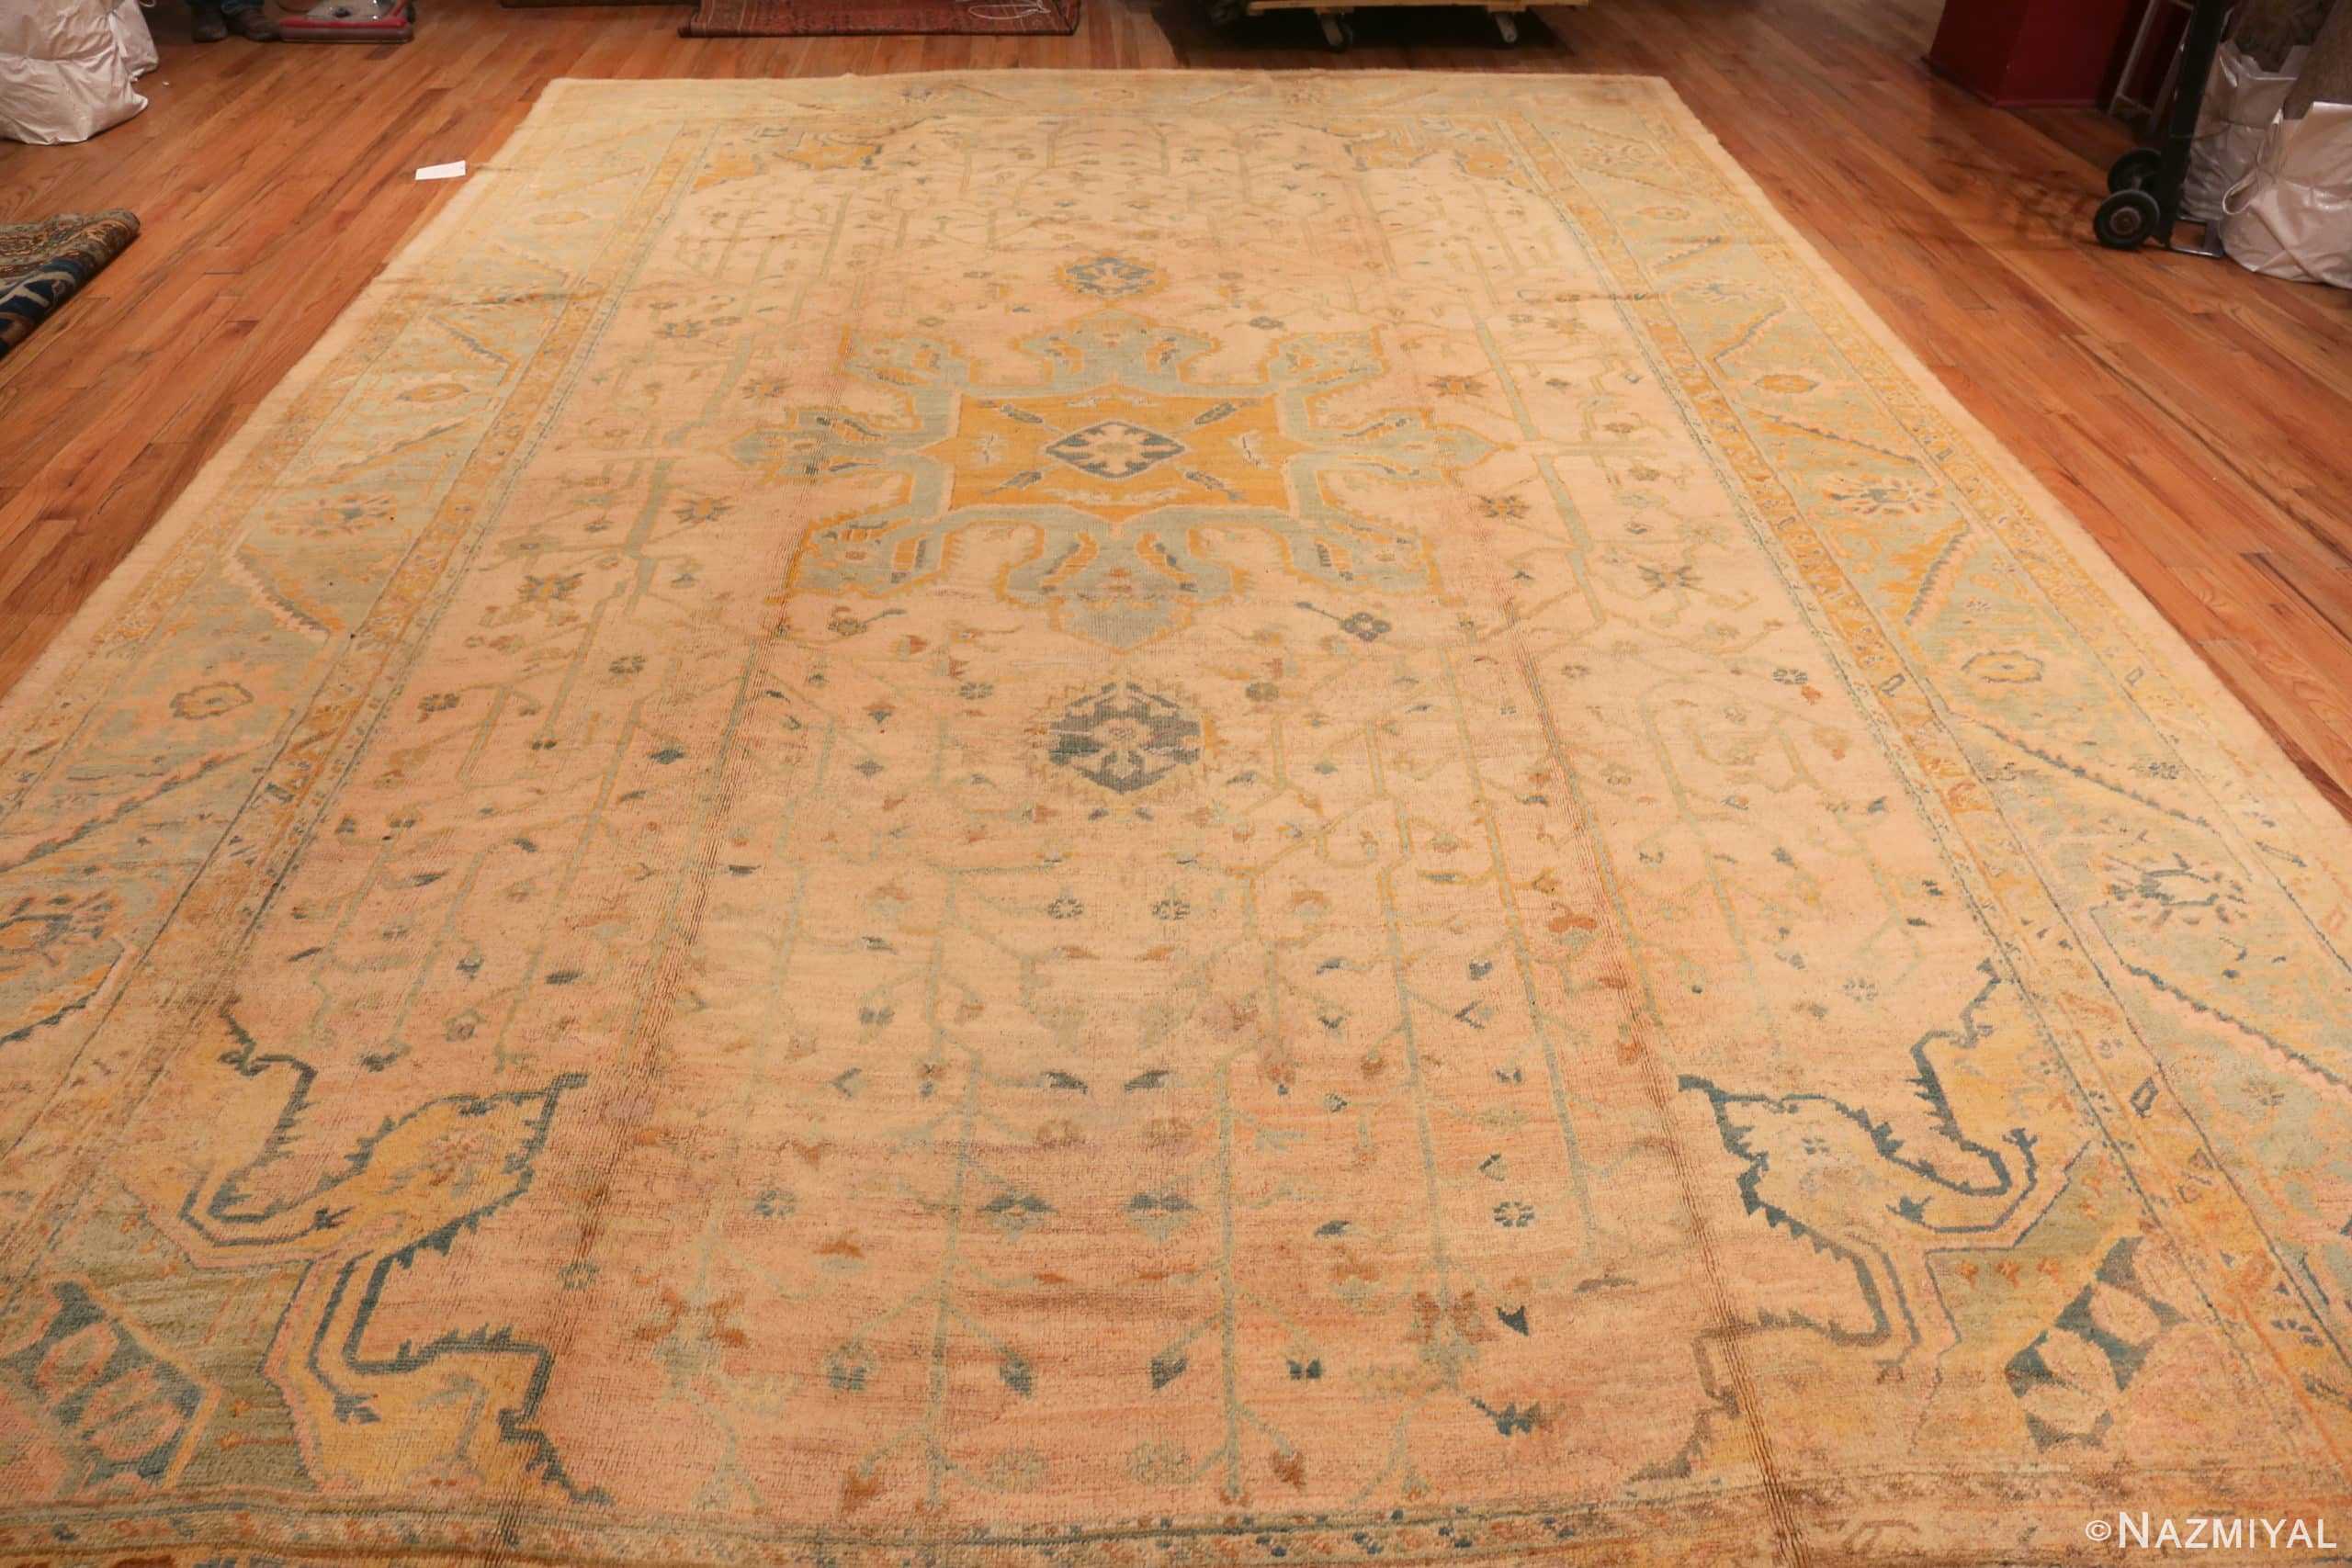 Whole View Of Large Soft Decorative Antique Turkish Oushak Rug 90040 by Nazmiyal NYC